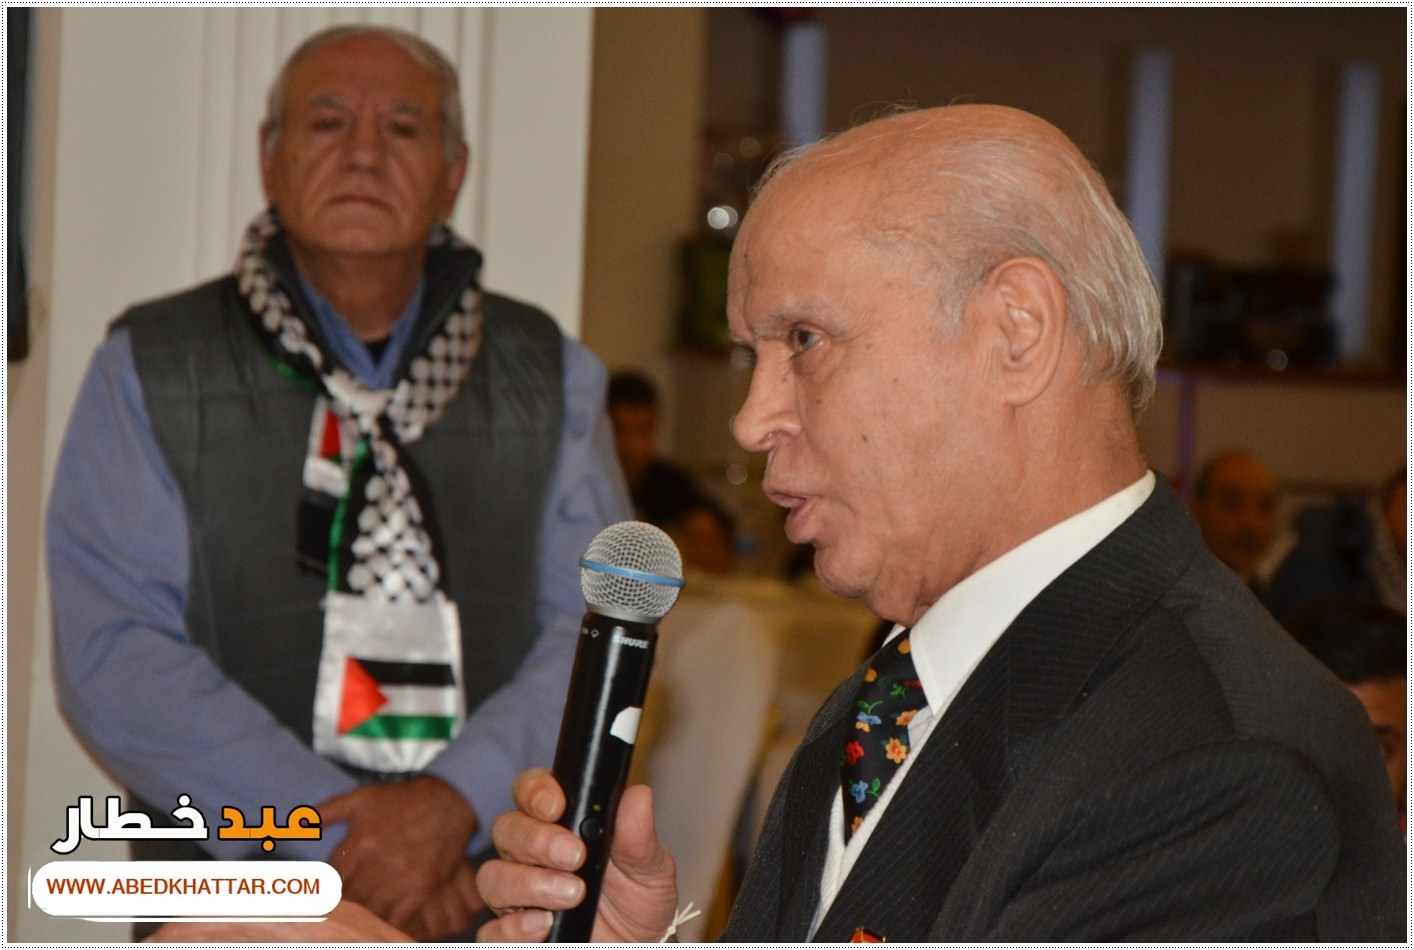 في الذكرى السبعين لتأسيس الأونروا لقد انطلقت فعاليات مؤتمر فلسطينيو أوروبا والأونروا الماضي والحاضر والمستقبل